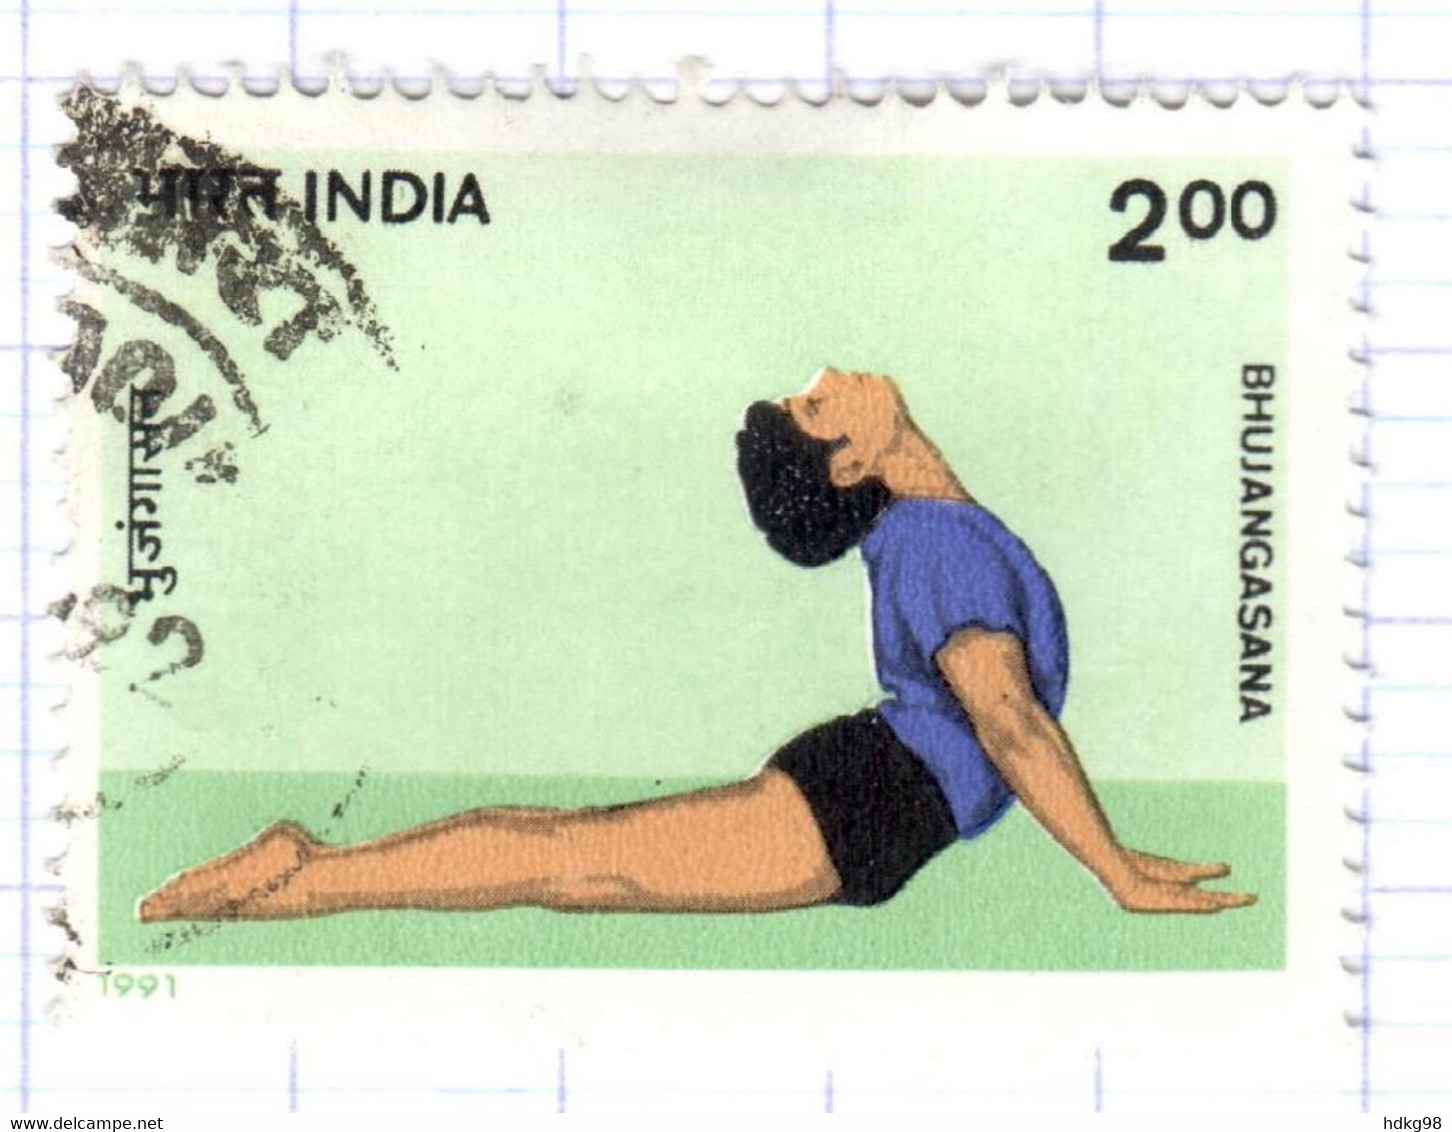 IND+ Indien 1991 Mi 1338 Yoga - Oblitérés